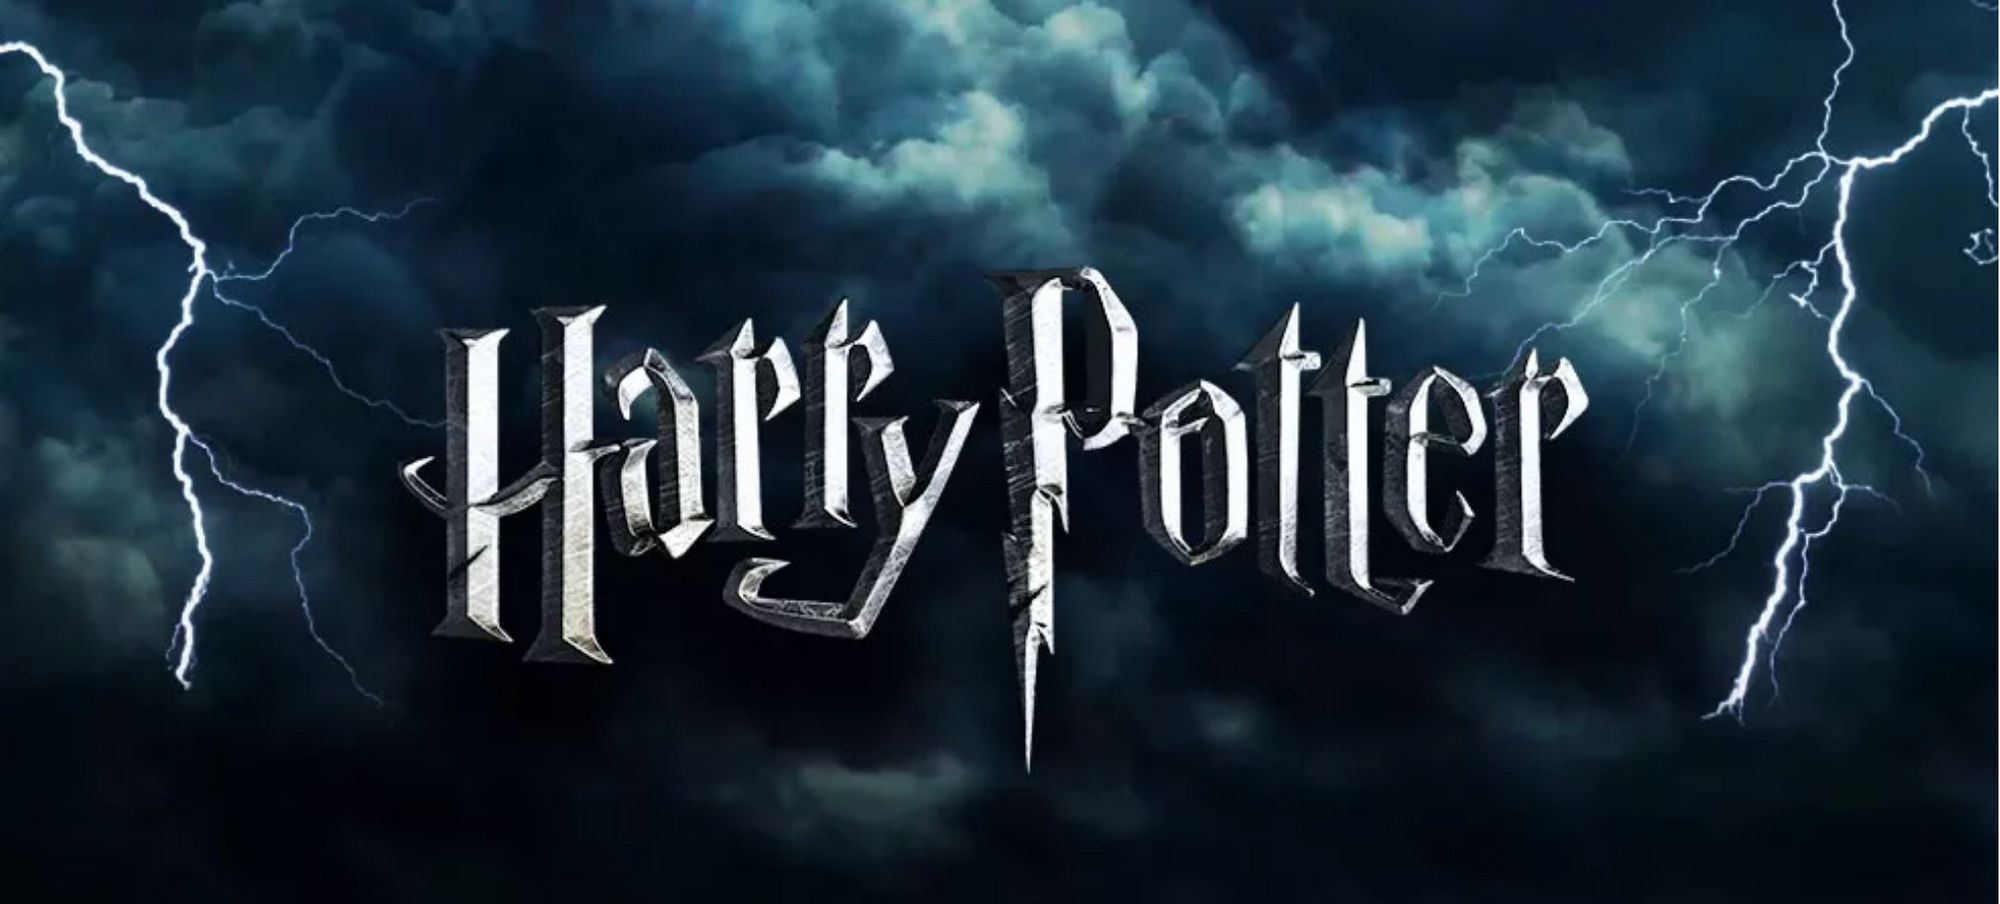 Harry potter Logo - Image 1.png